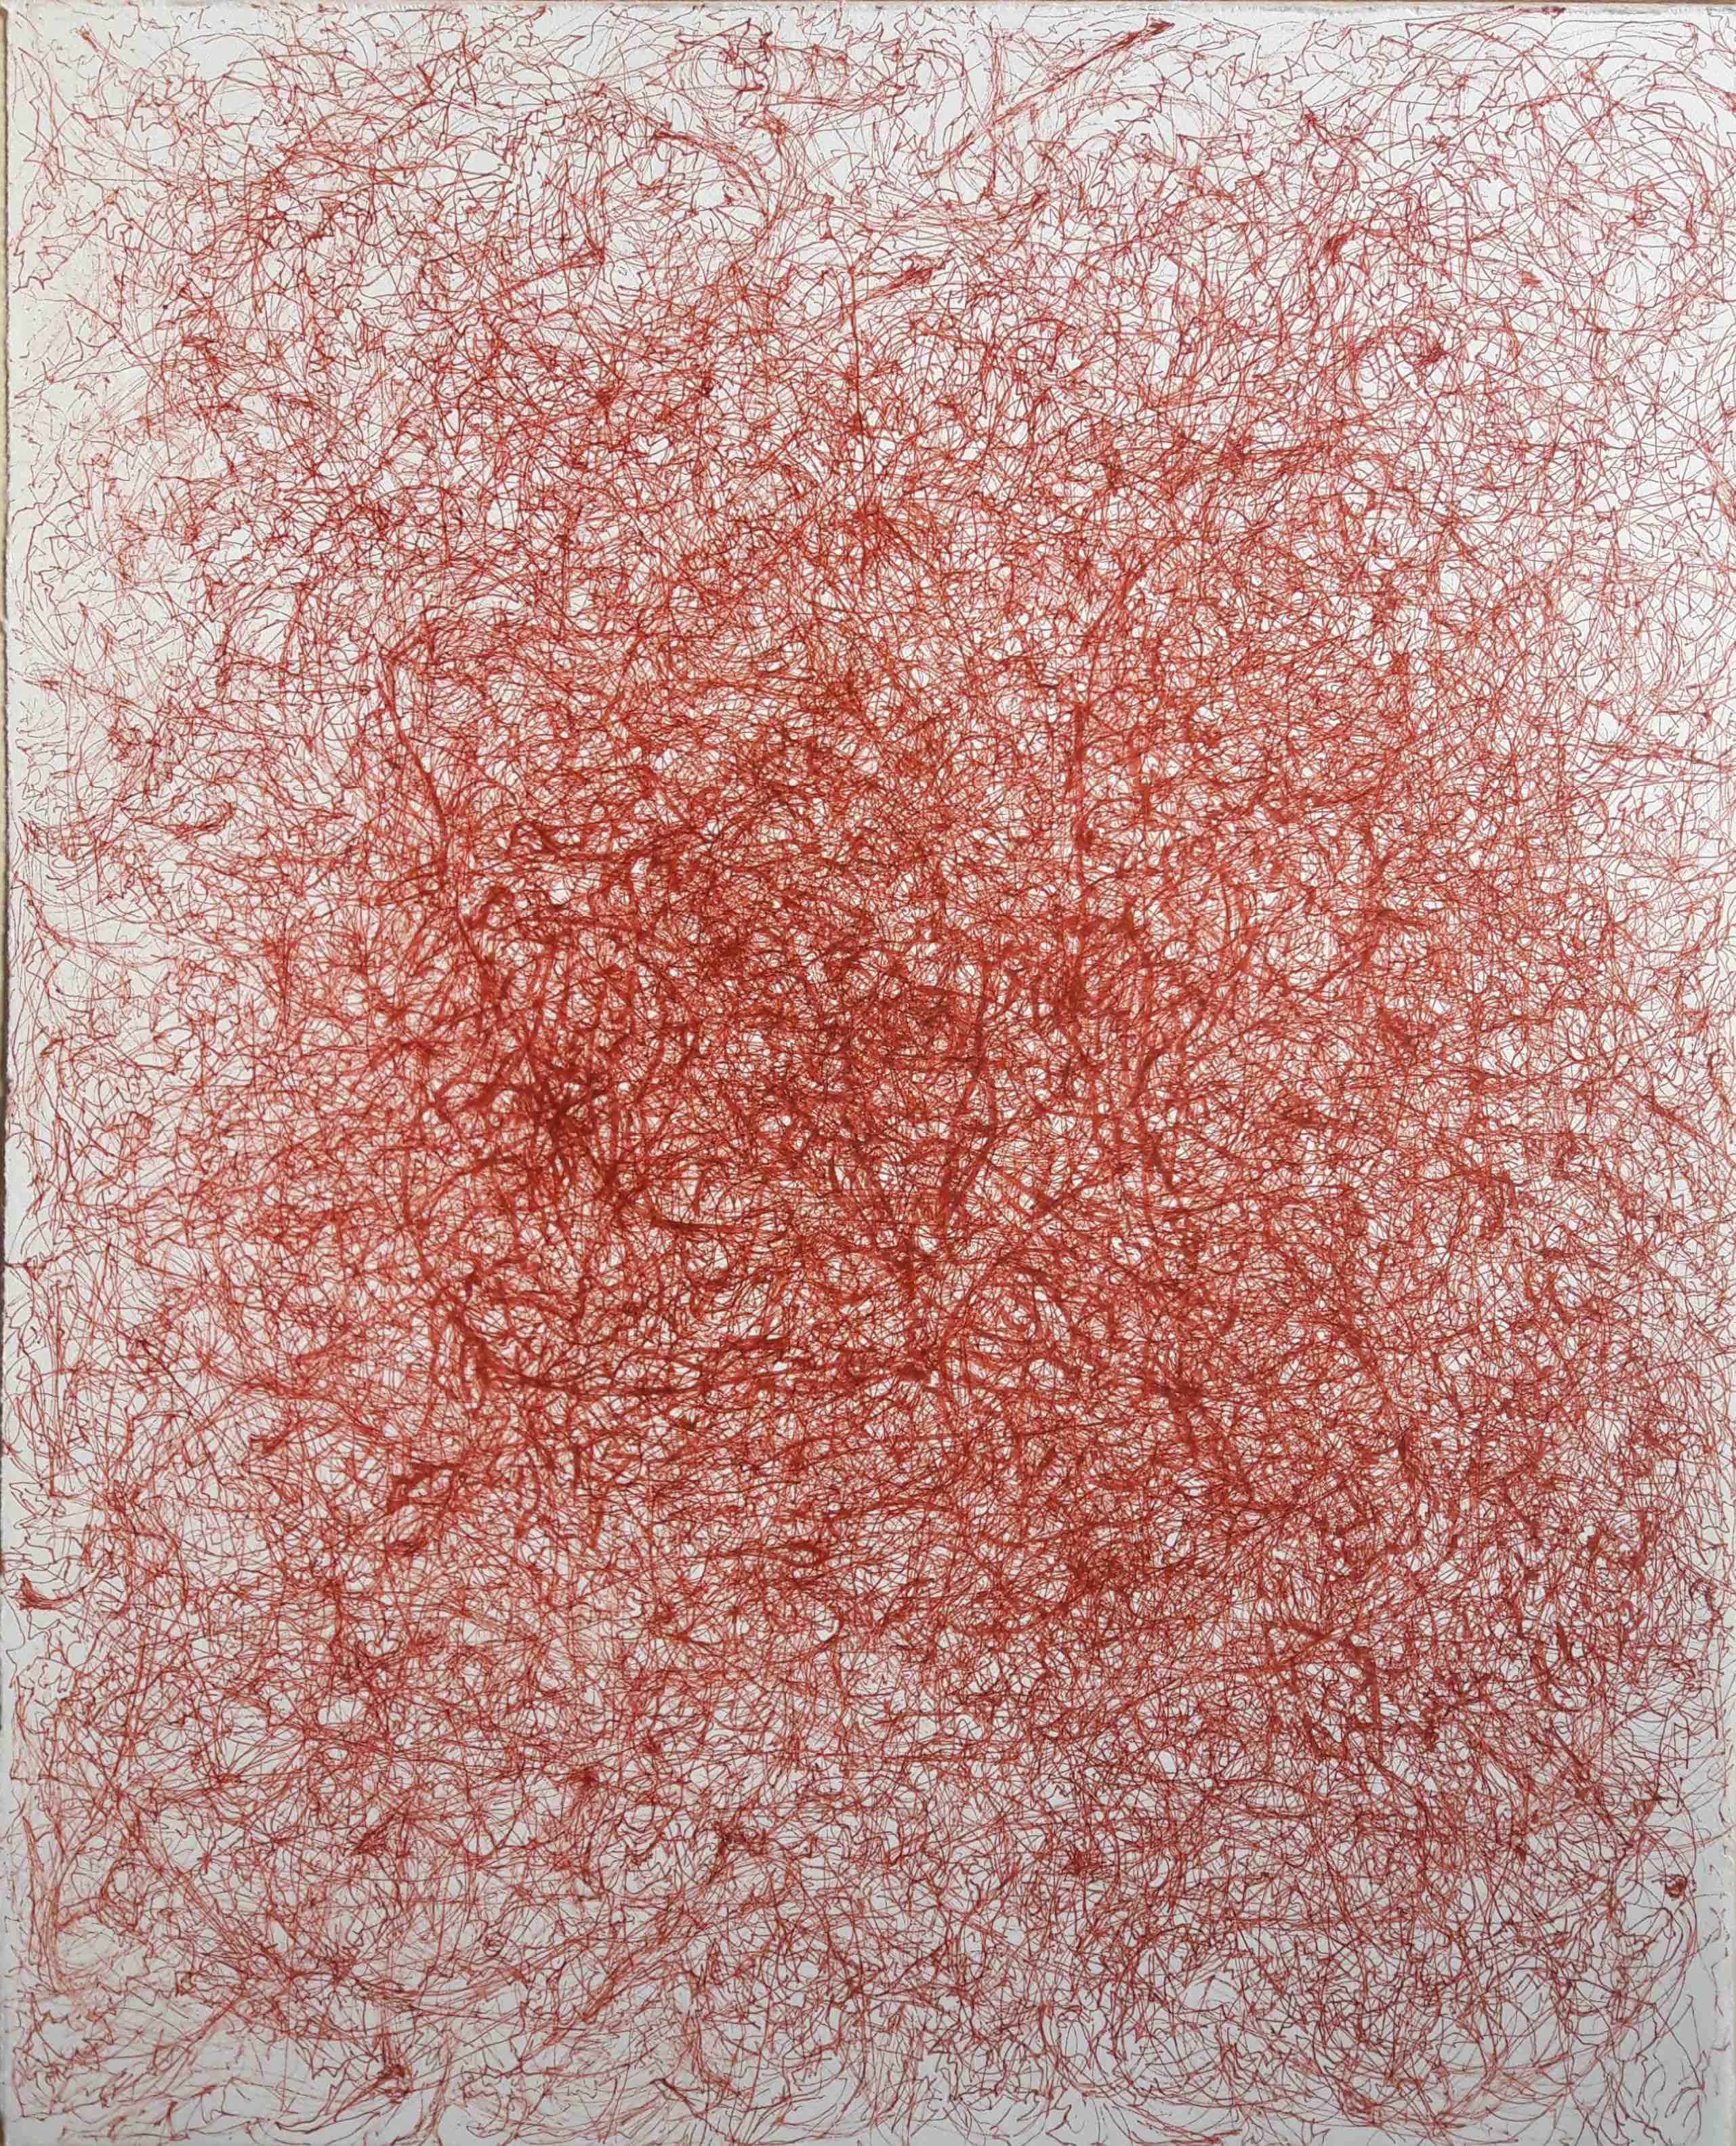 Dessin-Ecriture, Archéologie - Feutre sanguine, 63x54cm